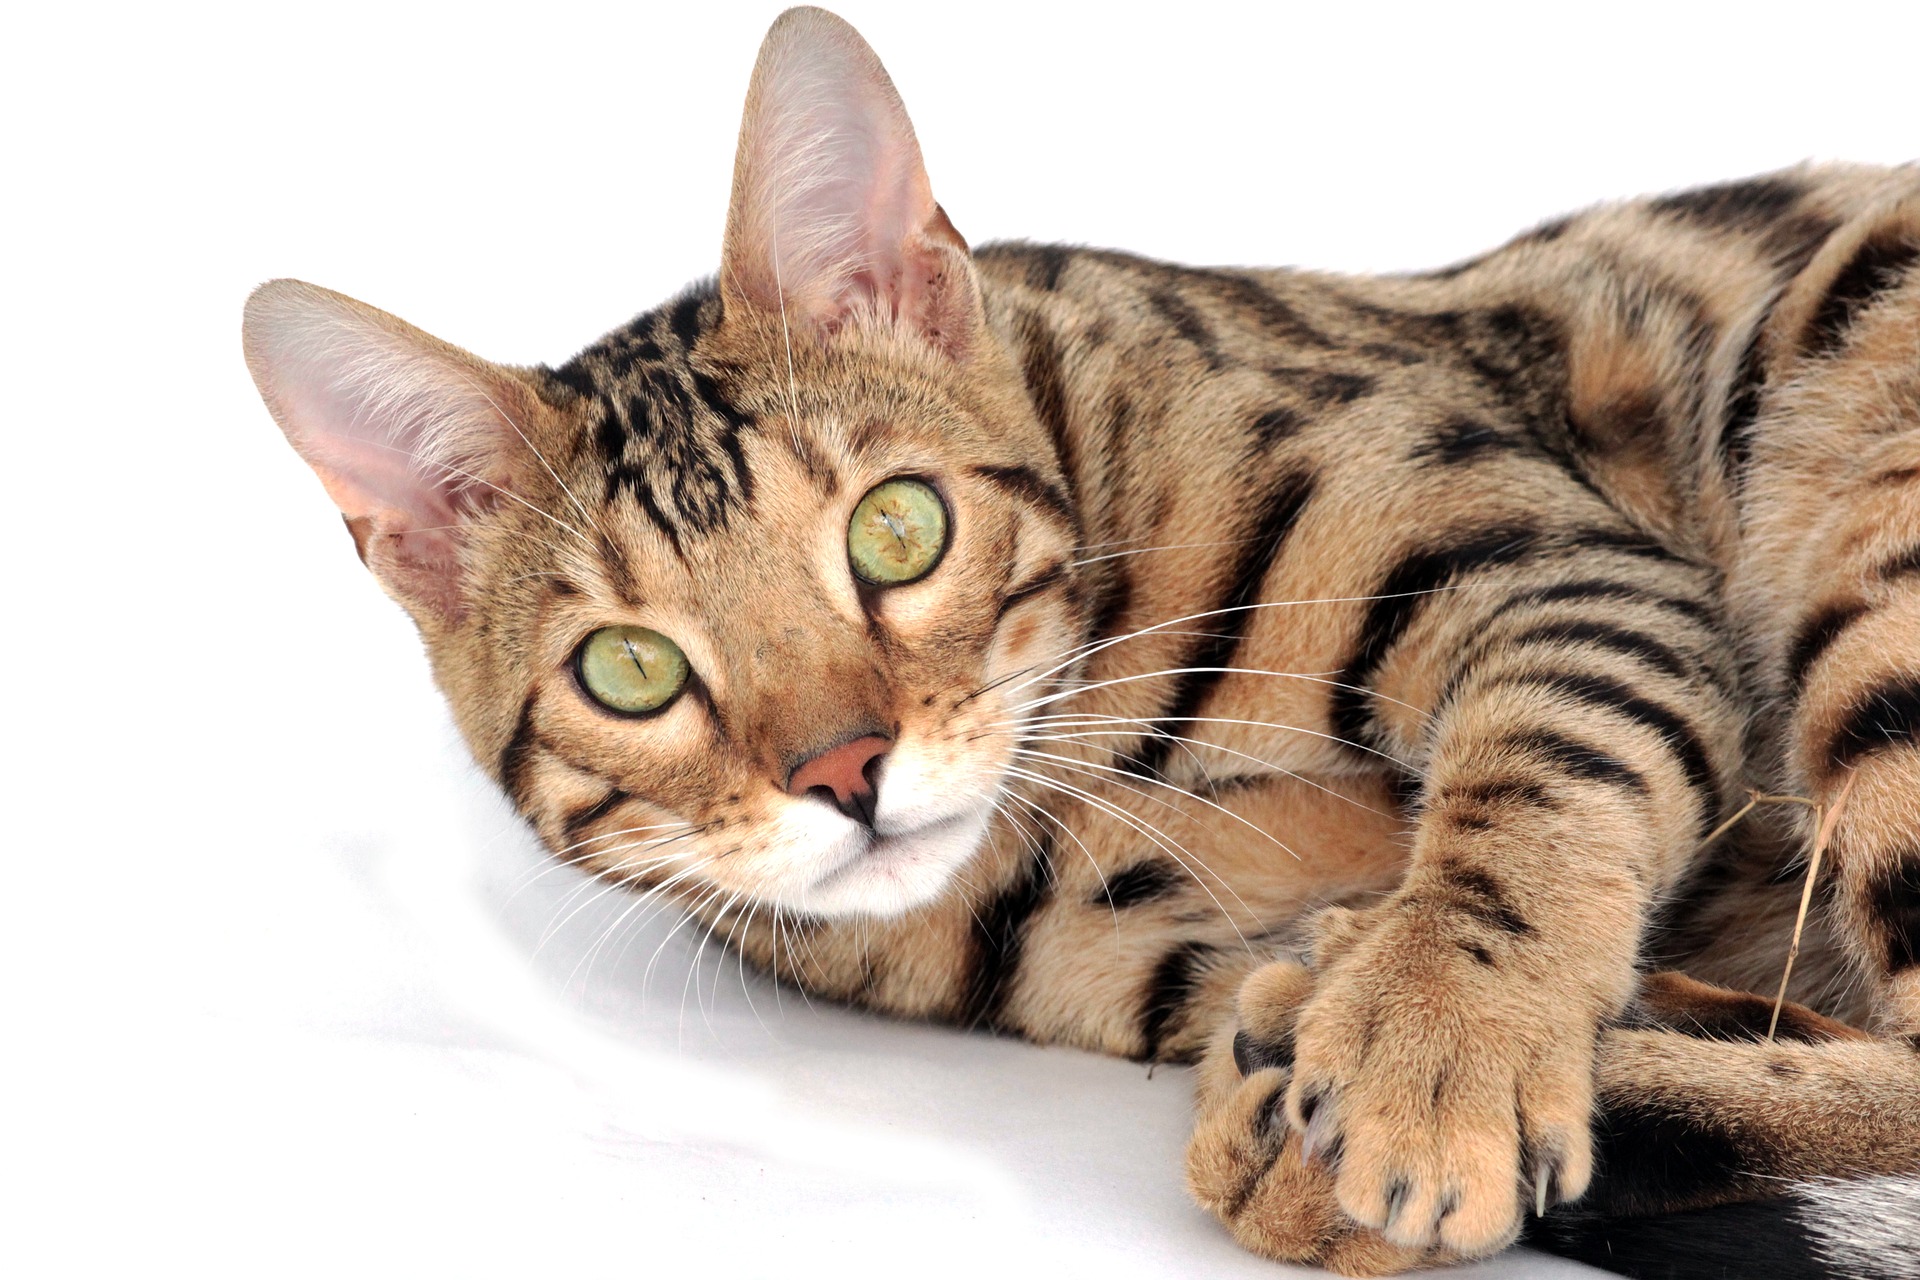 Fiind o rasă de pisici de talie mare, pisicile Bengal au nevoie de un suport mare pentru zgâriat și de o dietă adecvată, bogată în conținut ridicat de proteine animale.